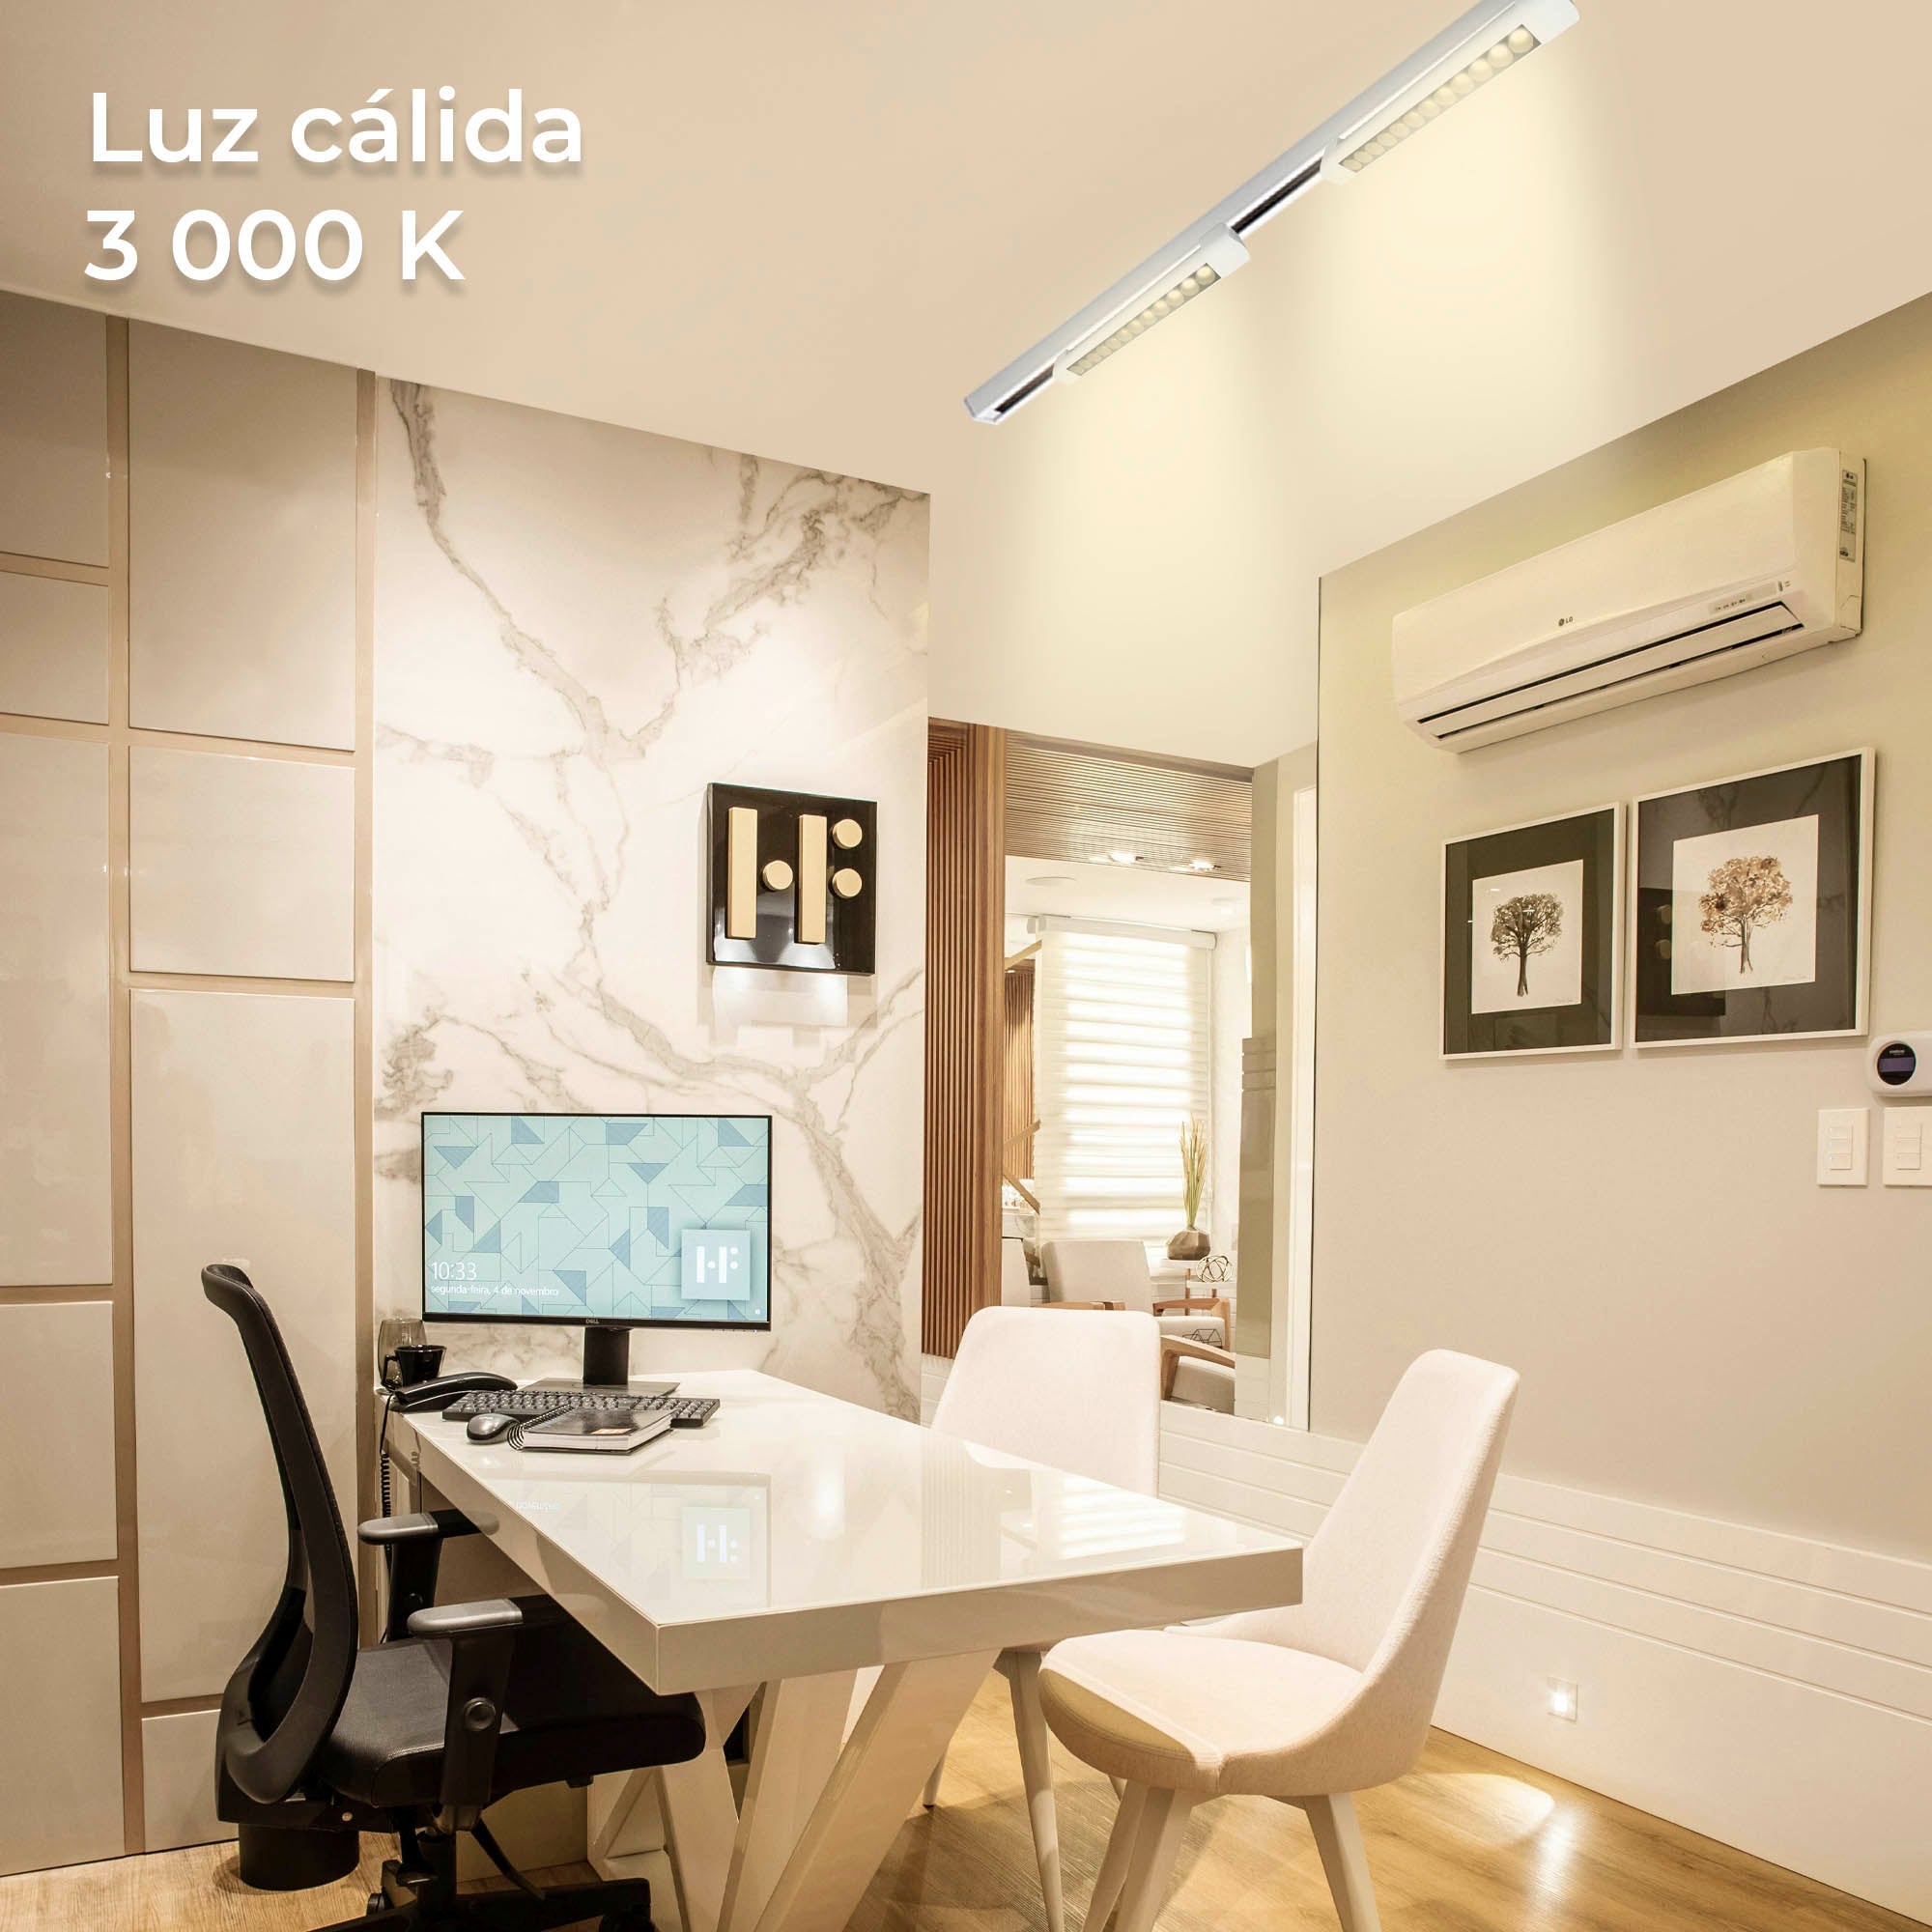 Luminaria LED Lineal Antideslumbramiento para Riel, Modelo TL-2919.R Estilo y Eficiencia en Iluminación Interior